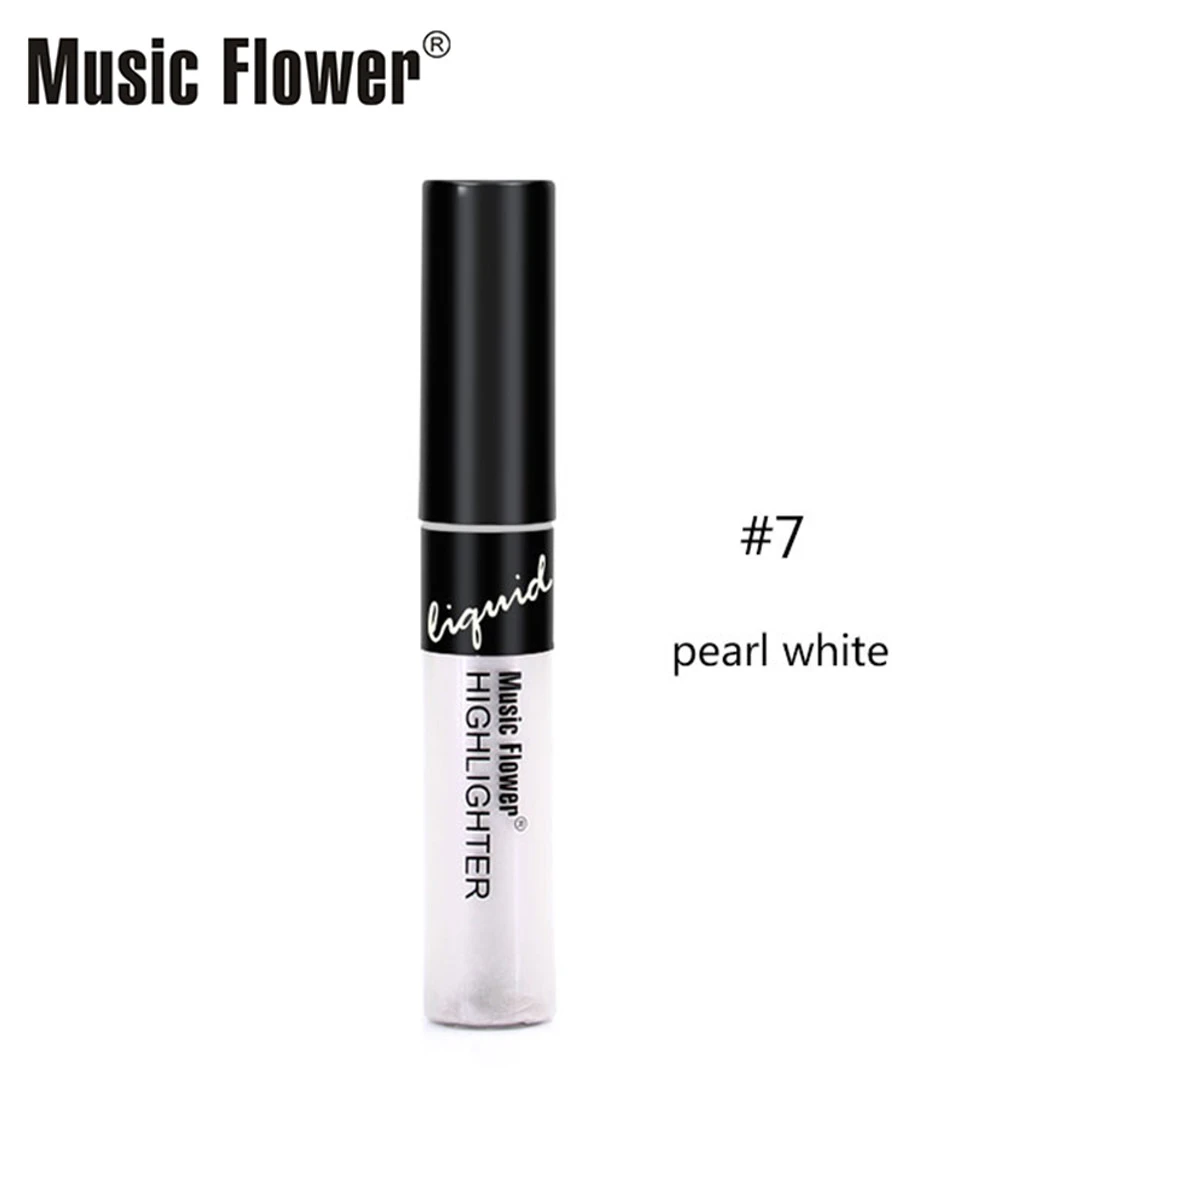 Find Music Flower Moisturizing Concealer Makeup Concealer Long Lasting Face Contour for Sale on Gipsybee.com